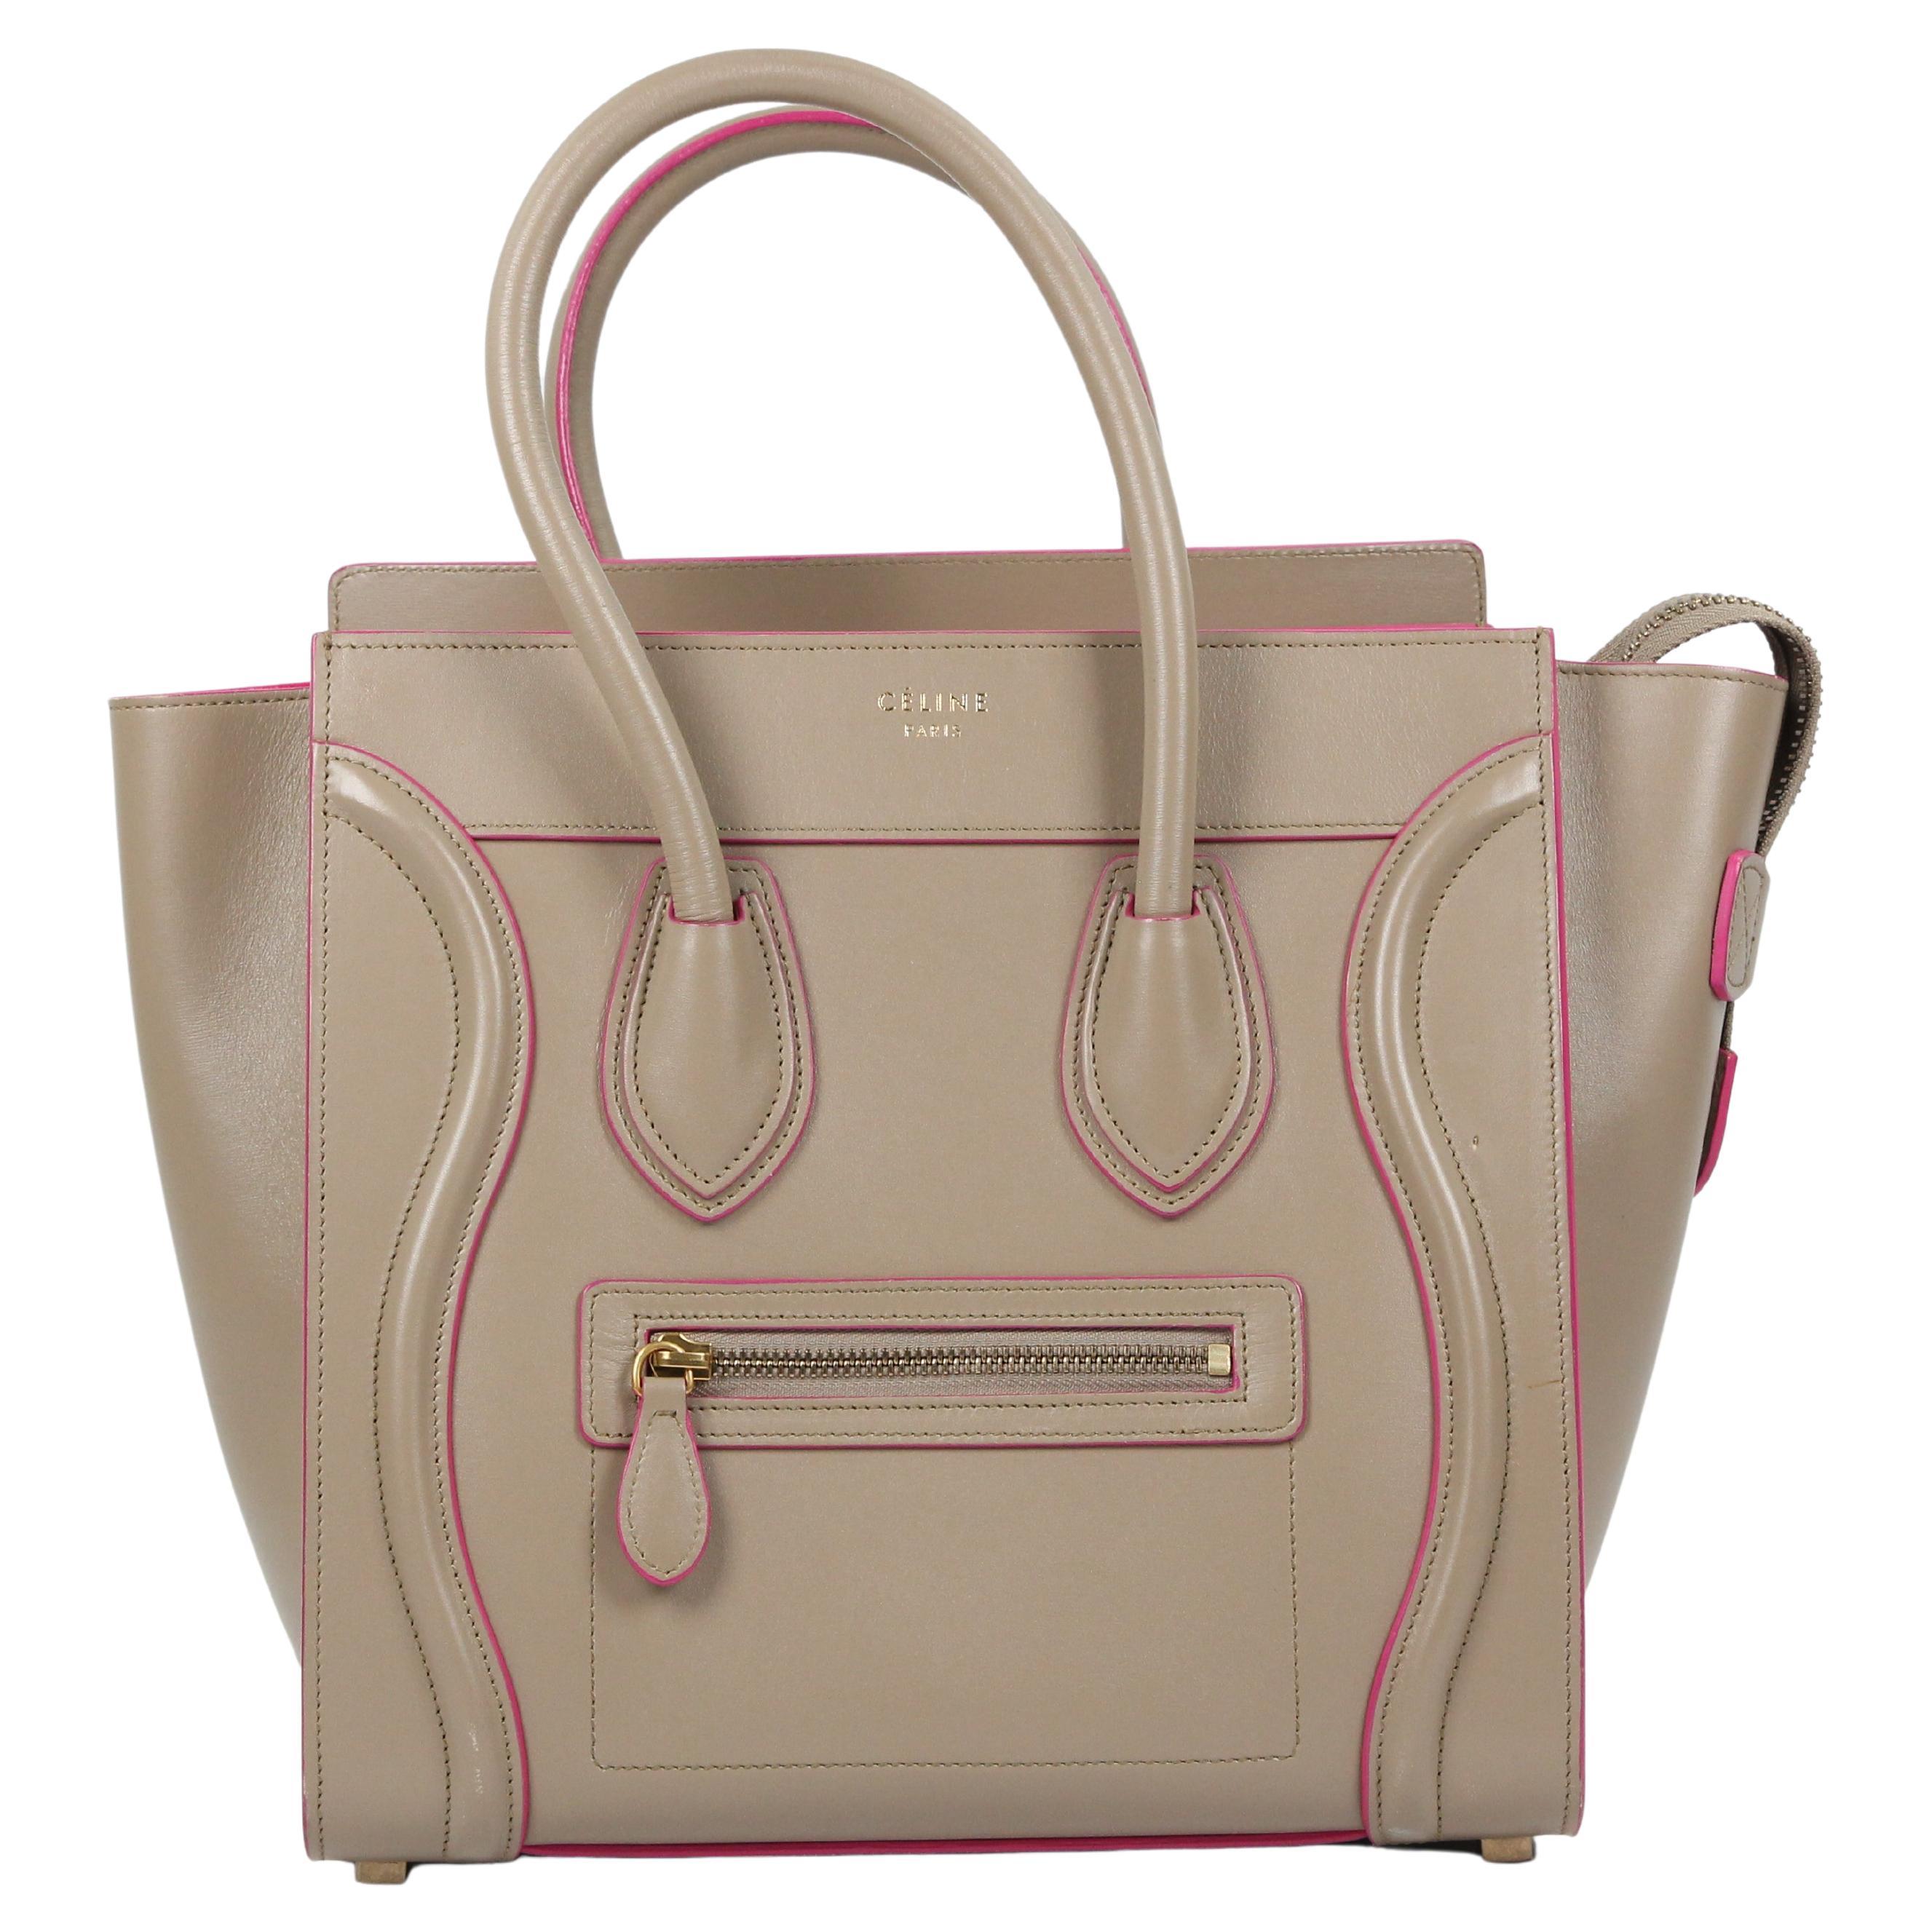 Celine Luggage leather handbag For Sale